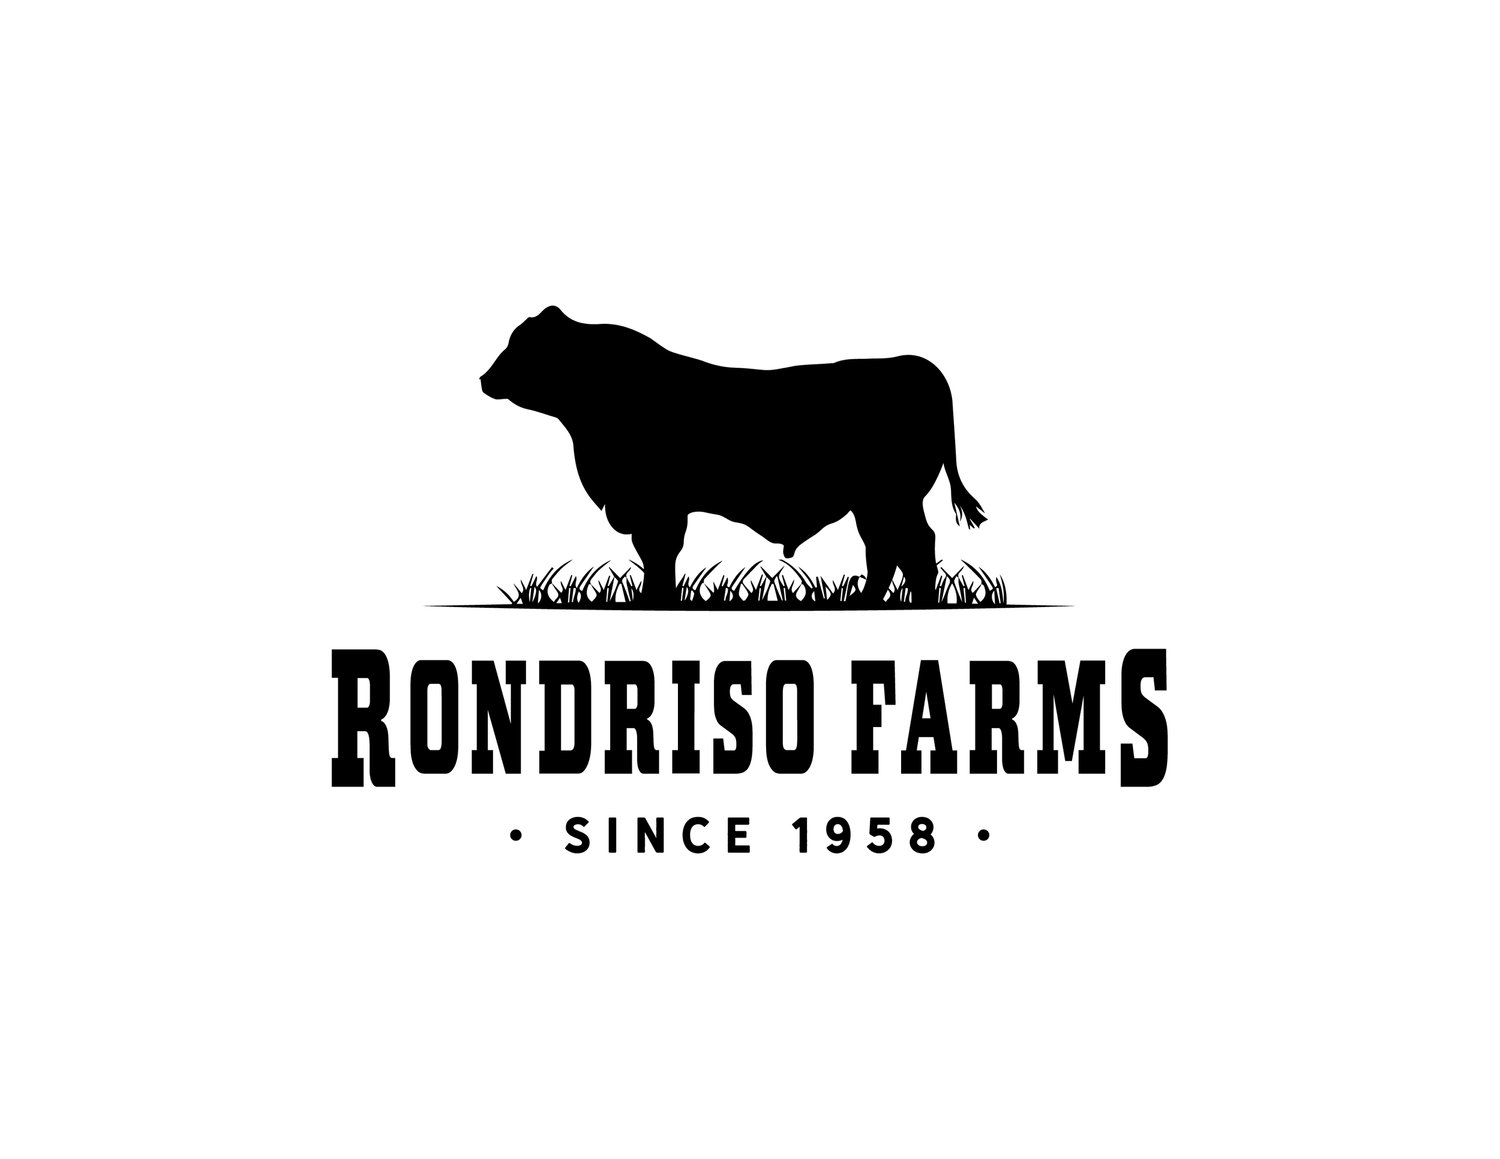 Rondriso Farms